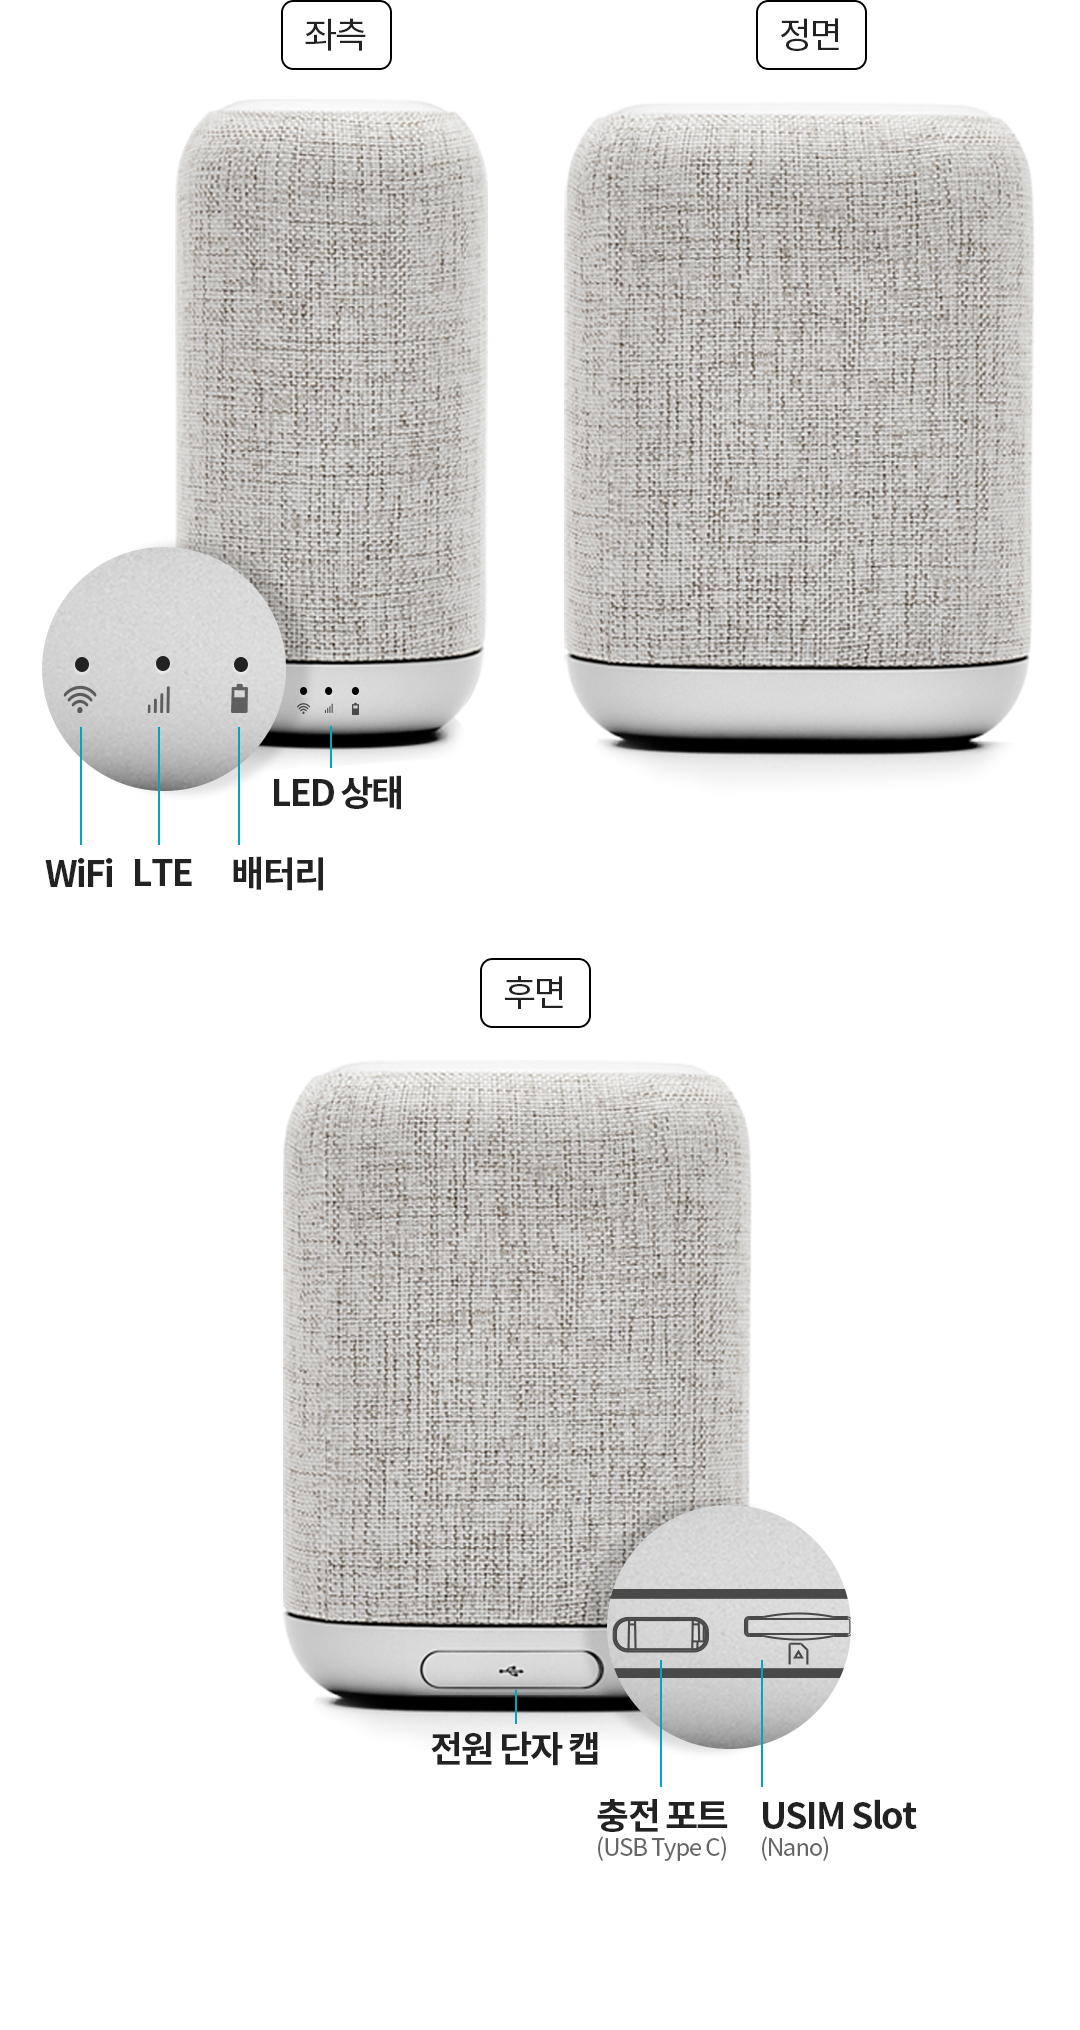 좌측 - LED 상태, WiFi, LTE, 배터리/ 정면/ 후면 - 전원 단자 캡, 충전 포트 (USB Type C), USIM Slot (Nano)